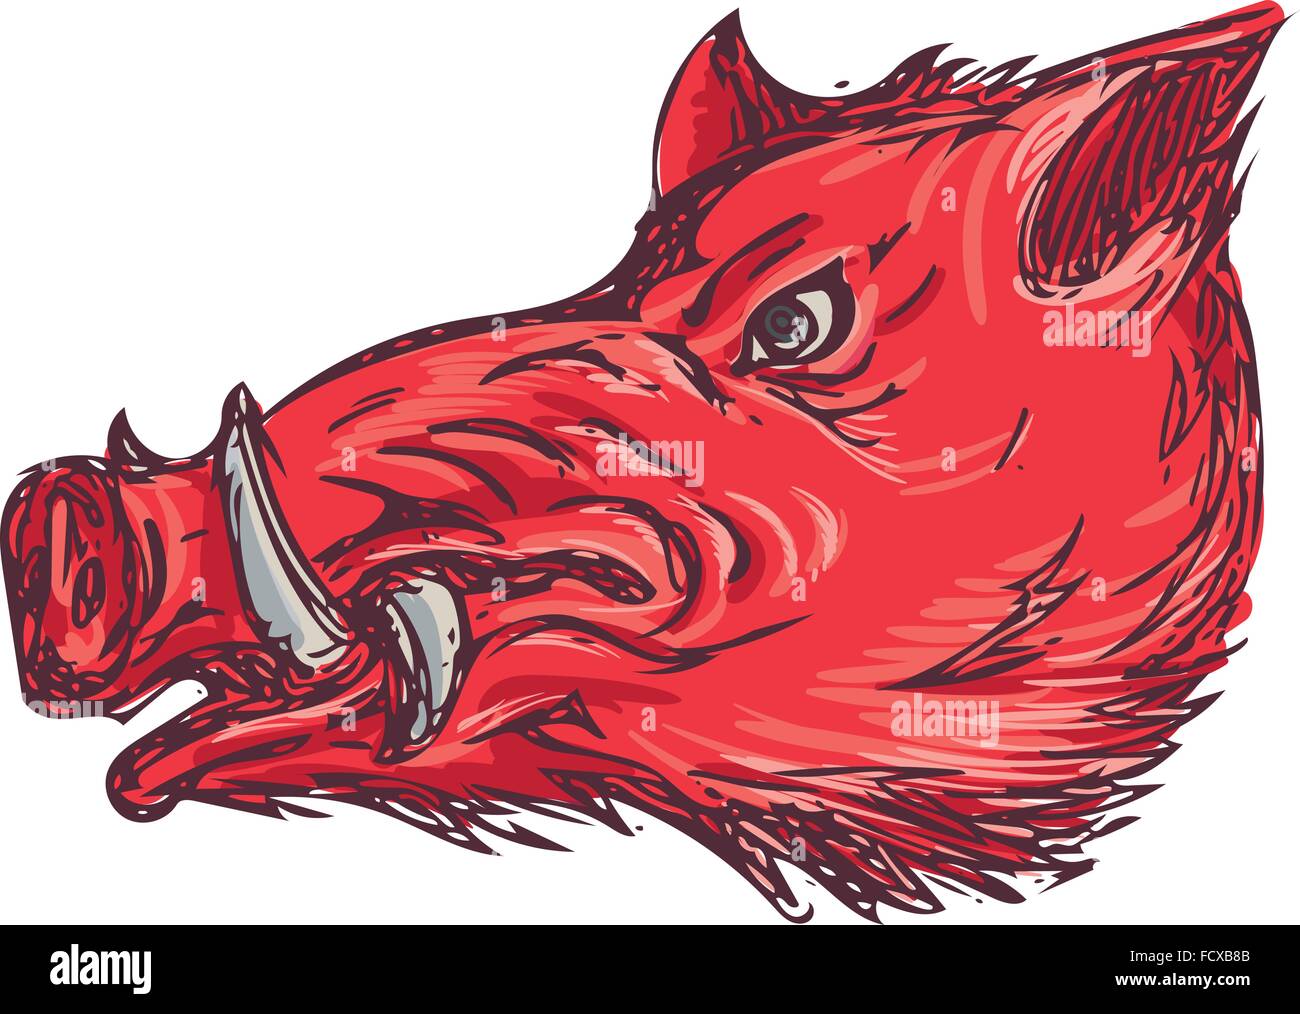 Style croquis dessin illustration d'un cochon sauvage sanglier razorback chef vu du côté situé sur fond blanc isolé. Illustration de Vecteur